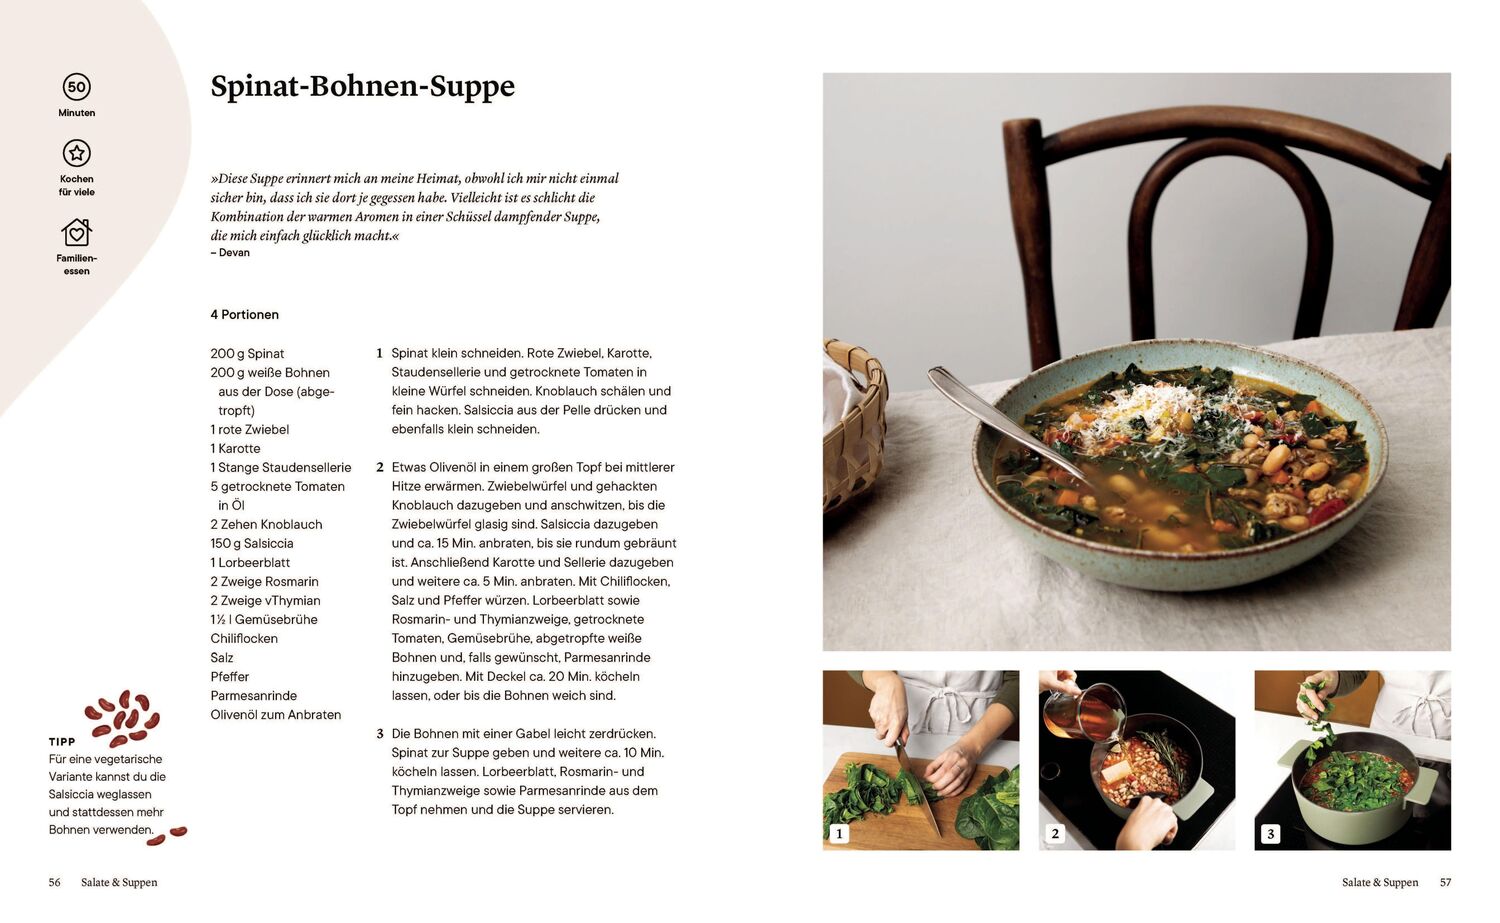 Bild: 9783328601609 | Anyone Can Cook | Kitchen Stories | Buch | 320 S. | Deutsch | 2020